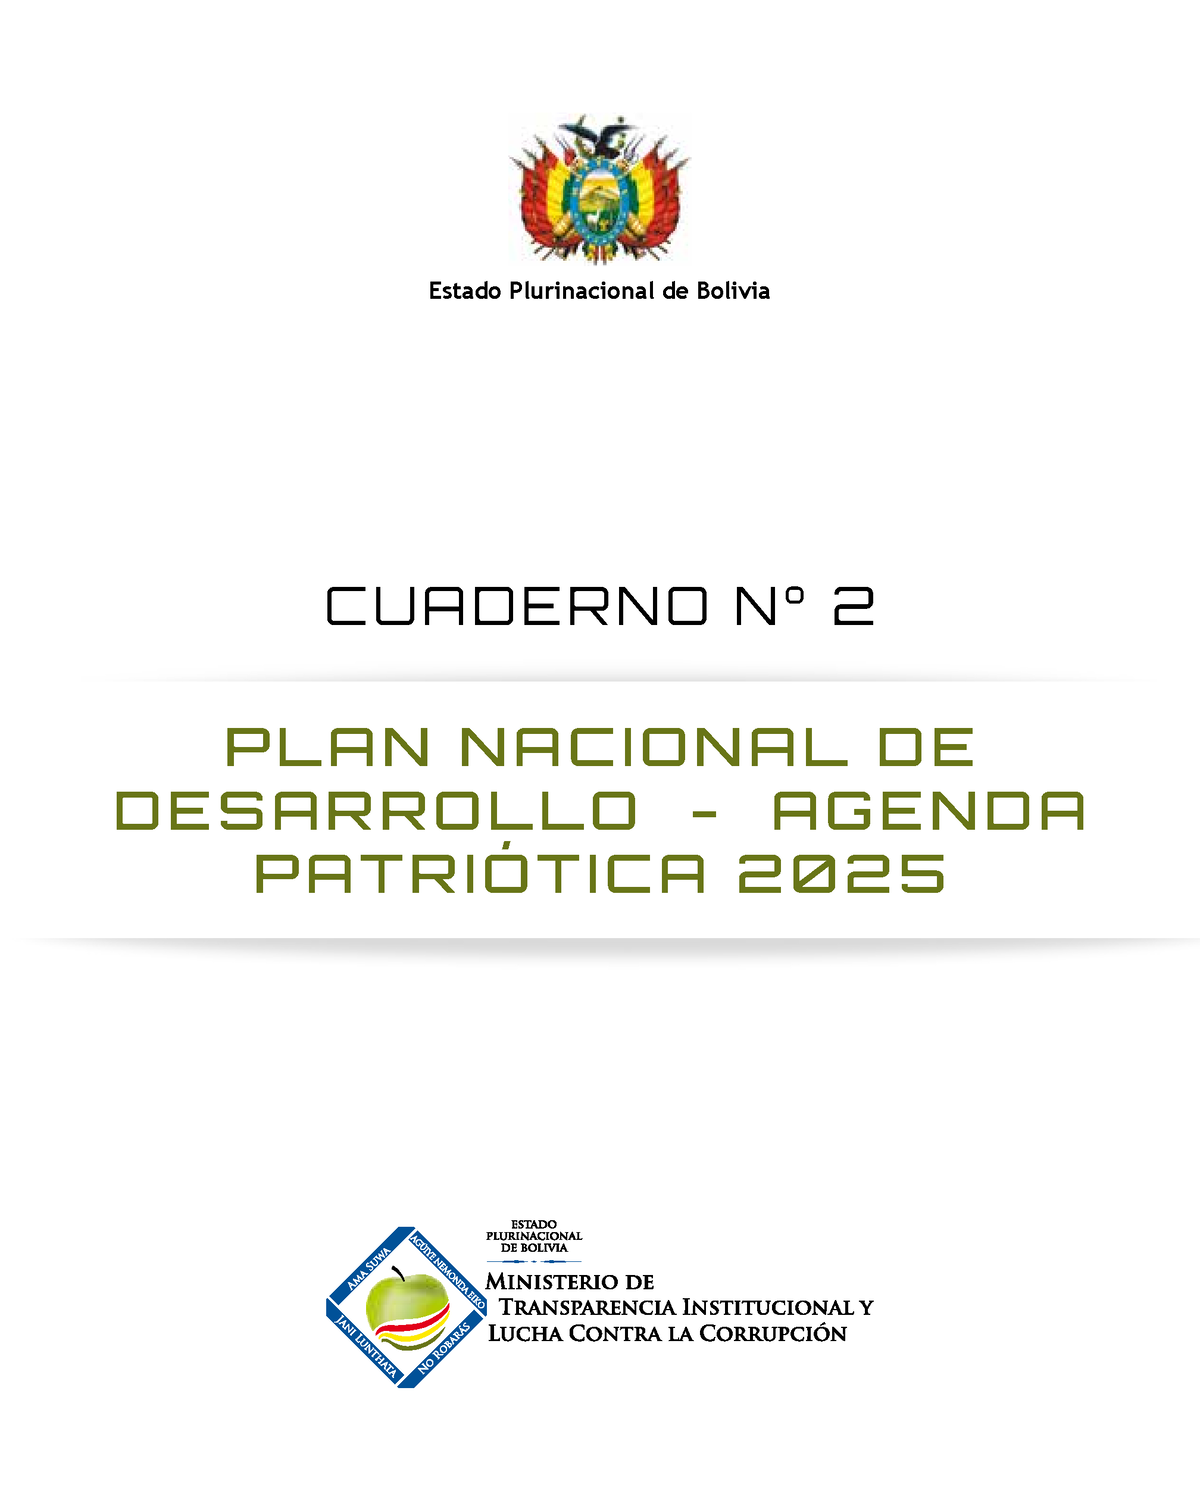 Agenda Patriótica 2025